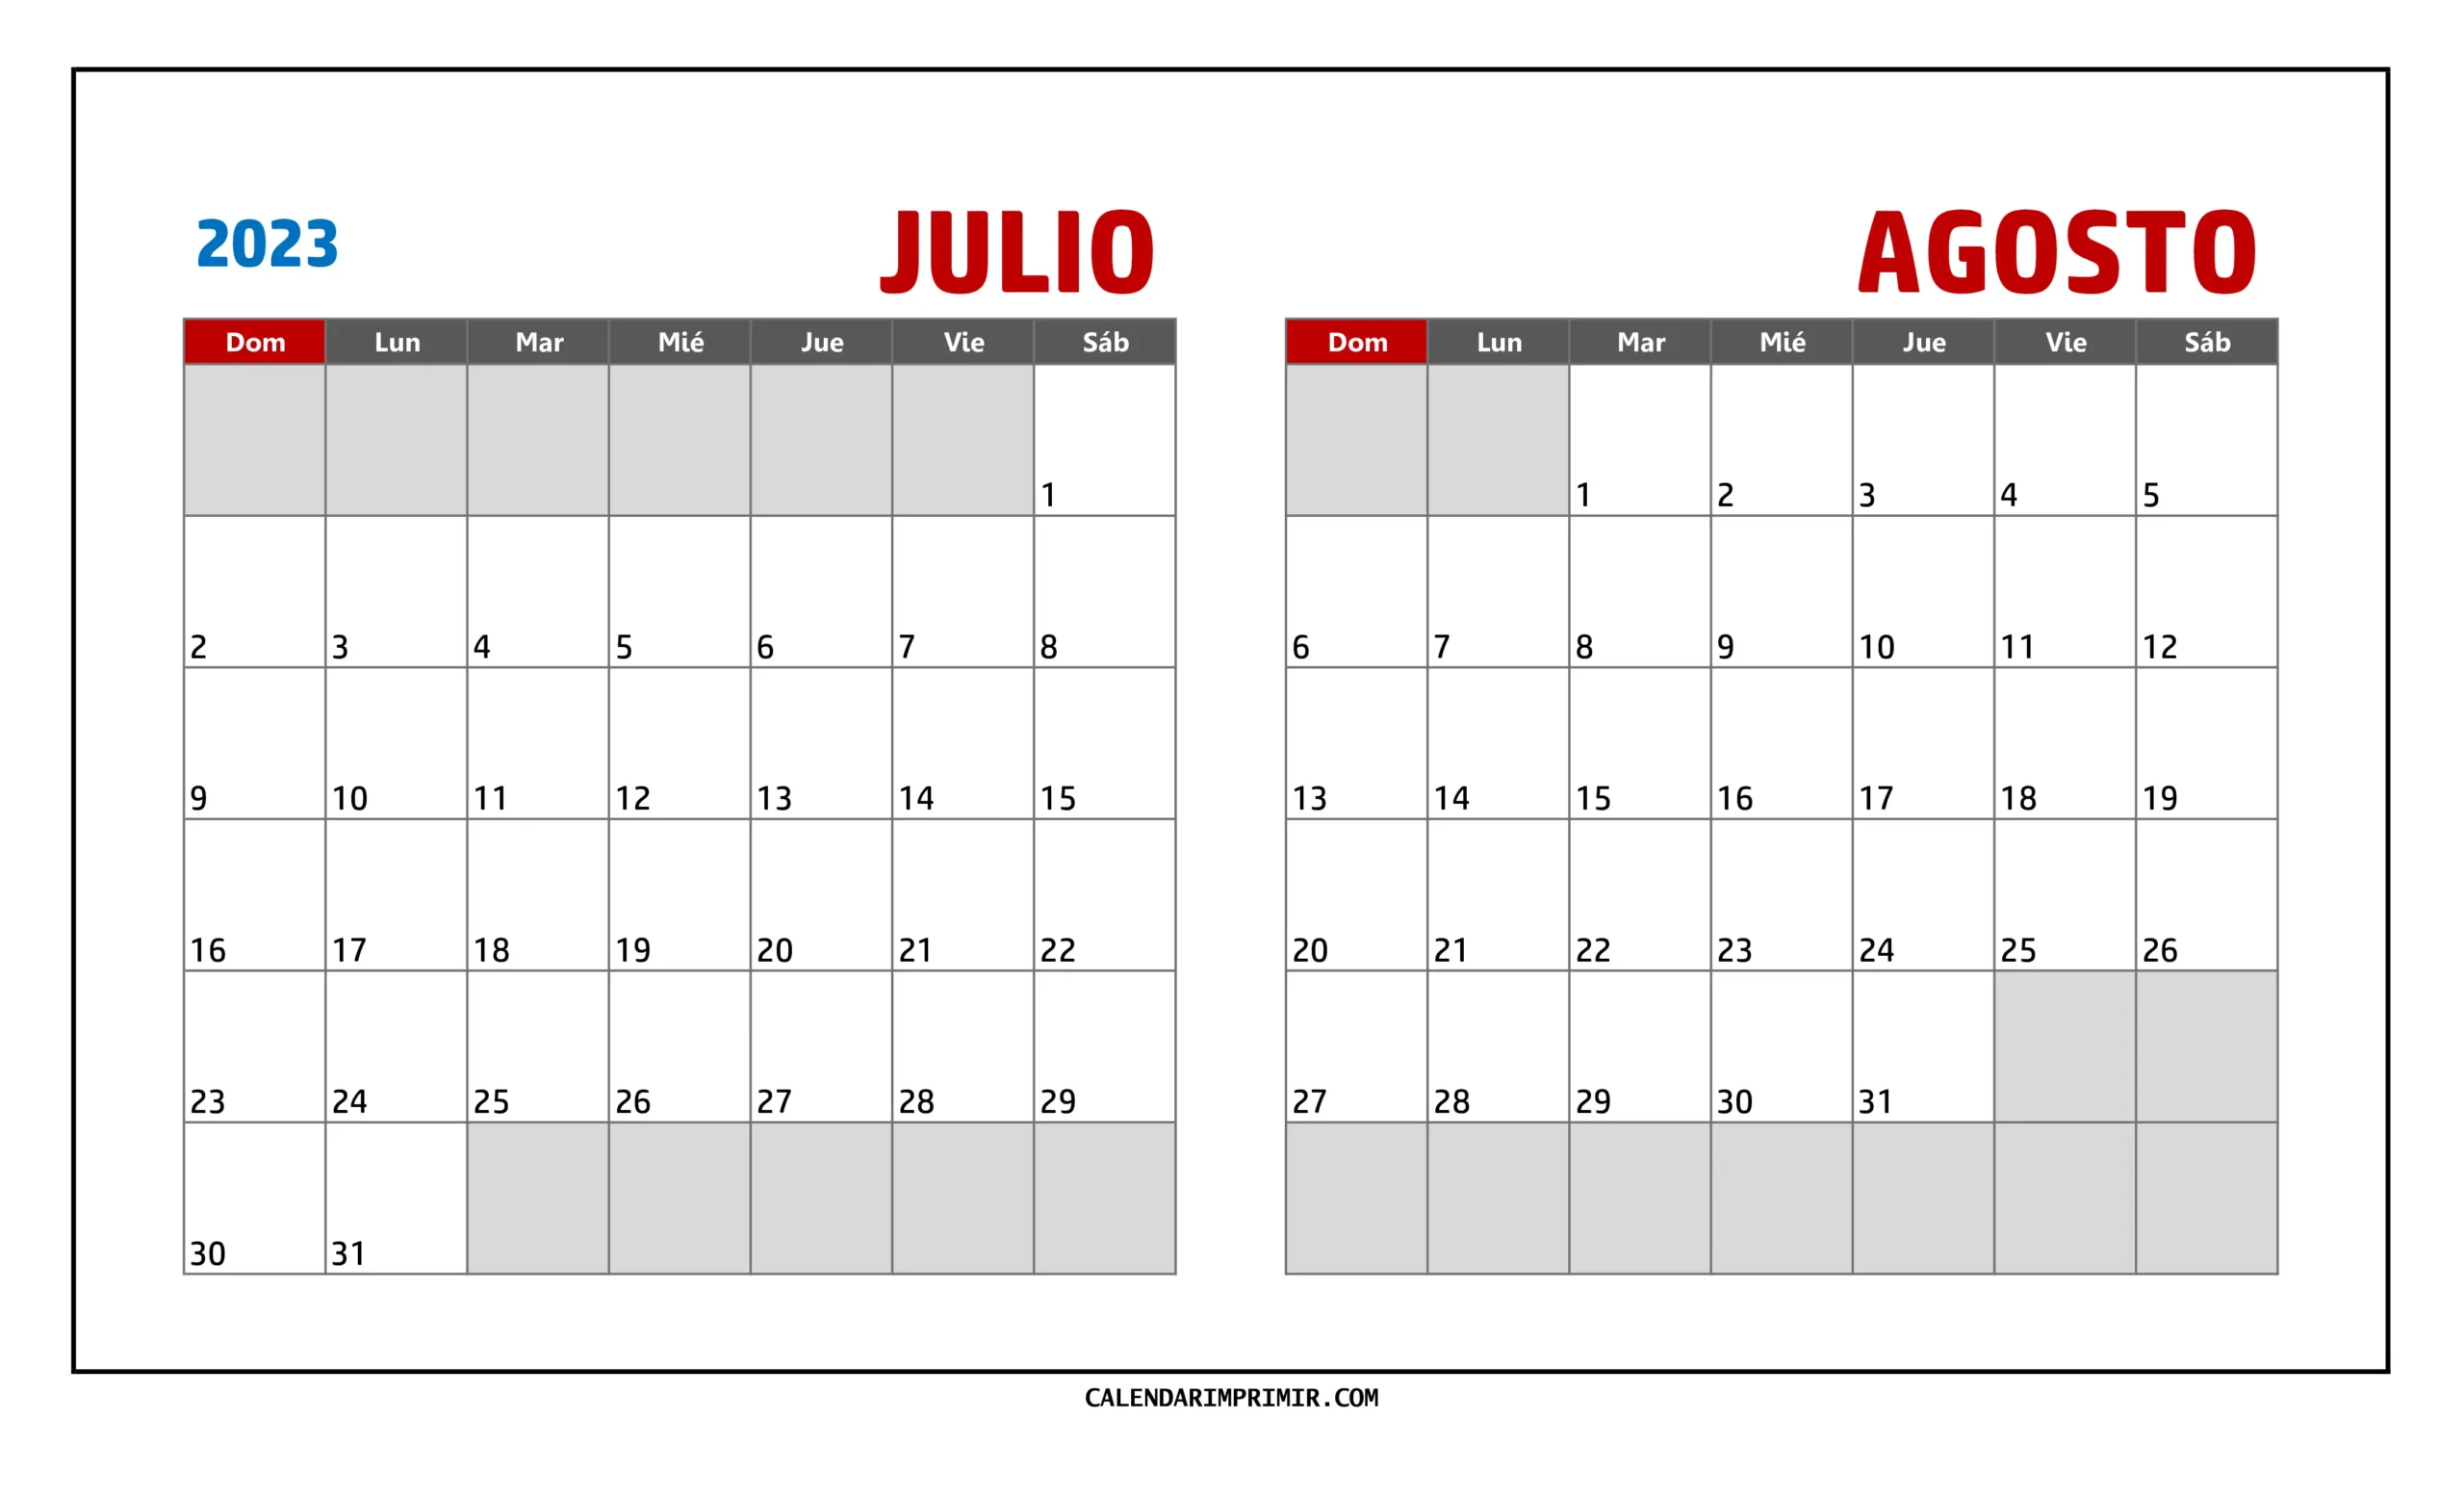 Calendario imprimible de Julio y Agosto 2023 en disposición horizontal para una visión amplia de ambos meses